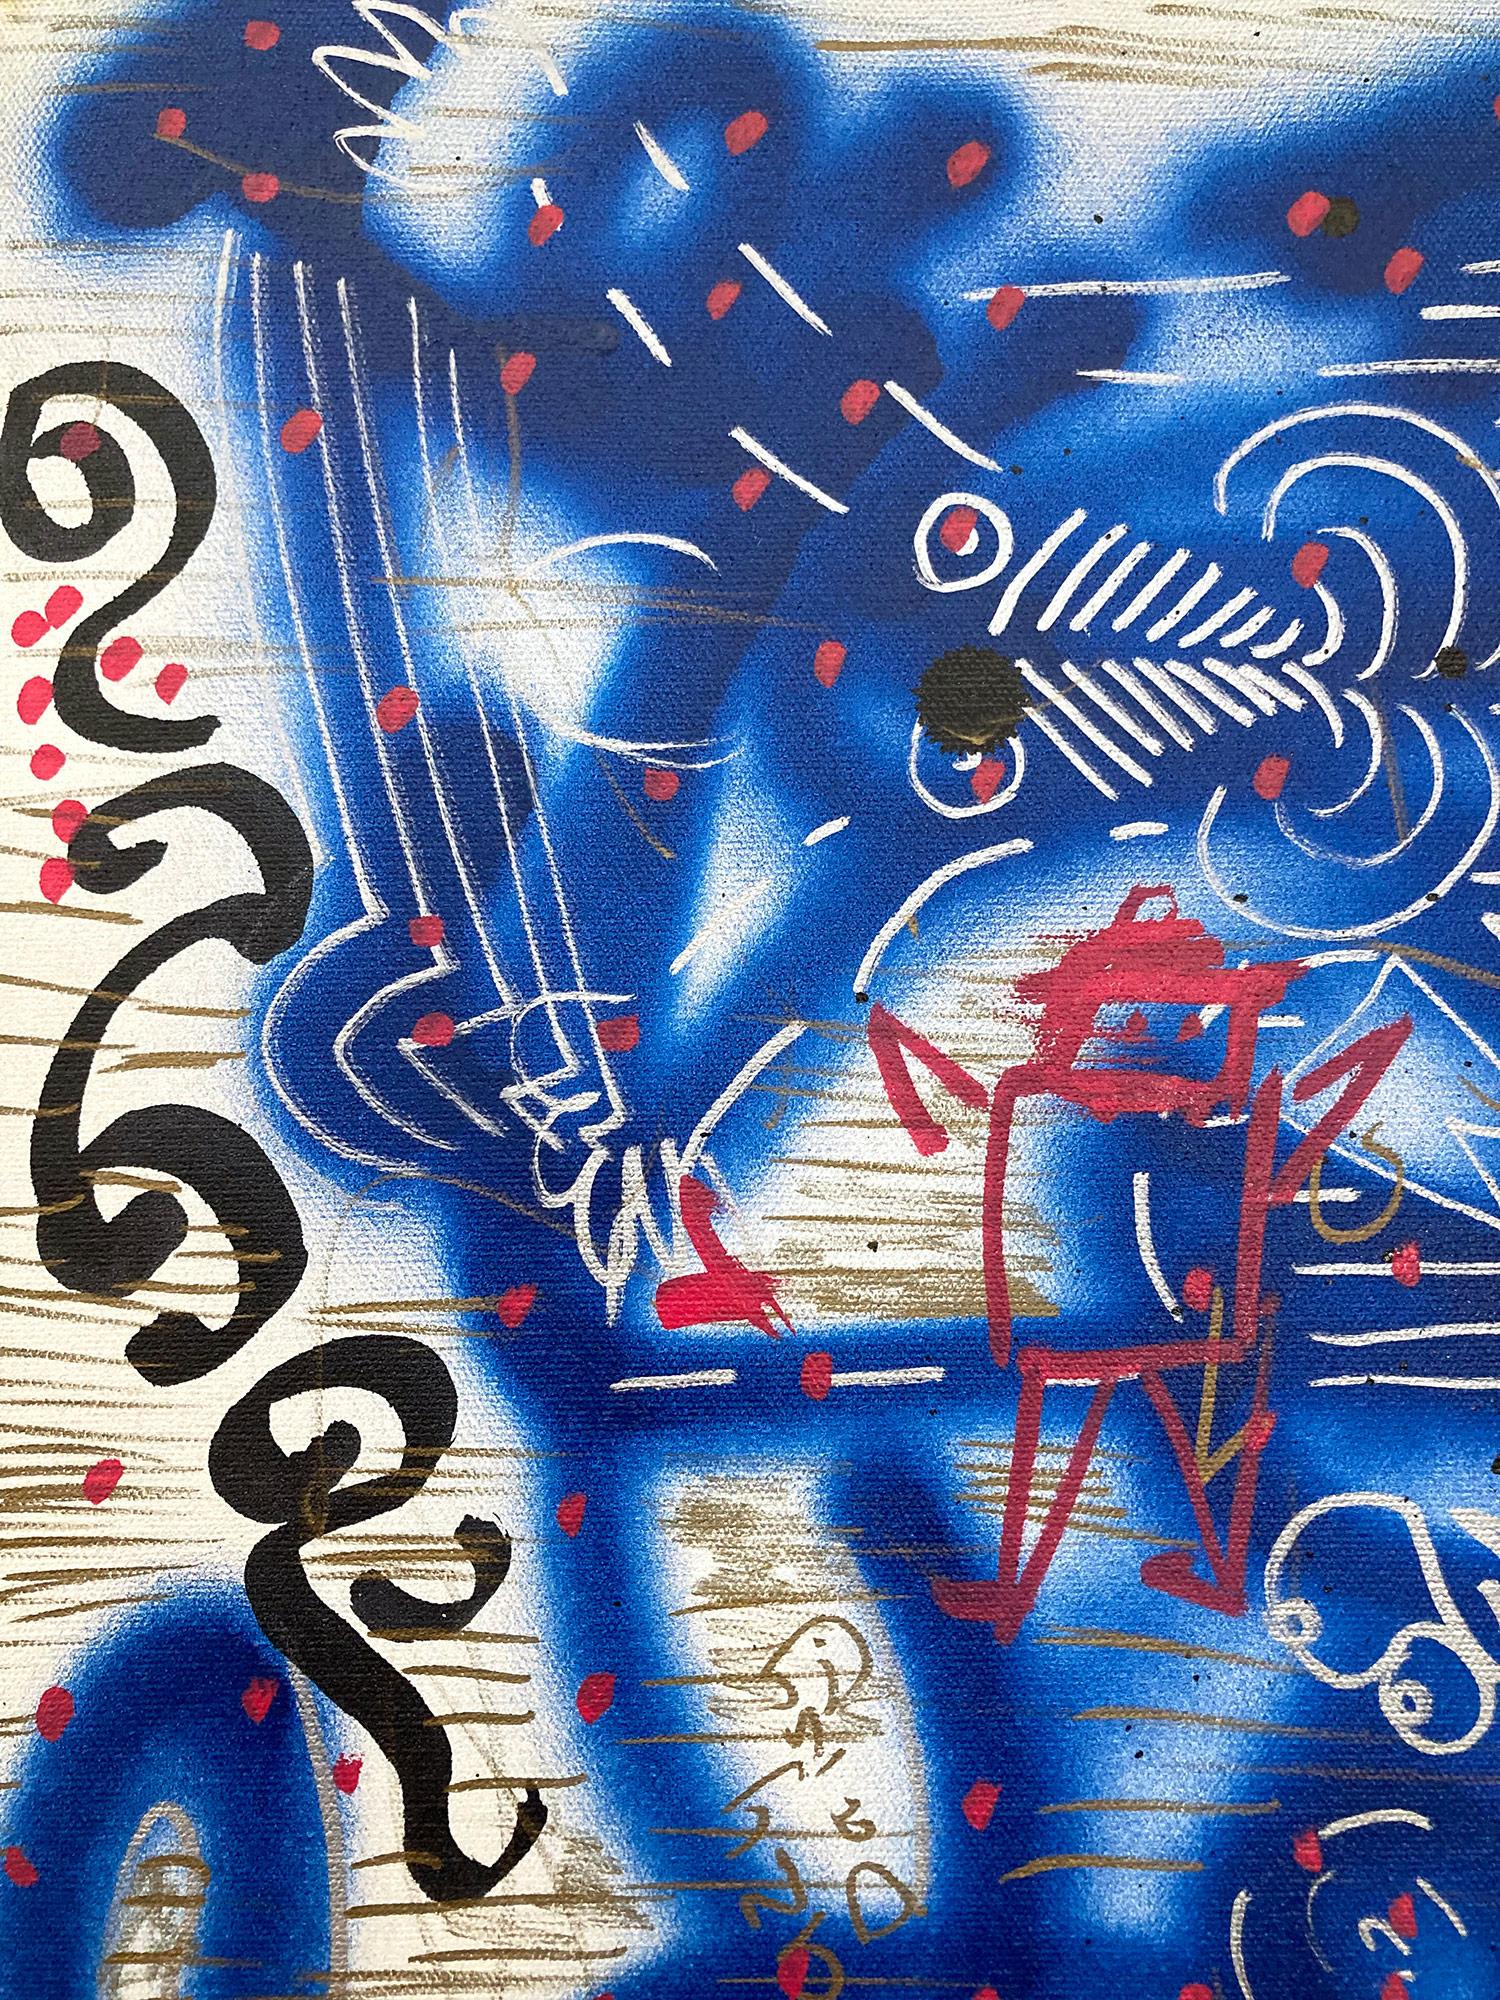 « Music Box » décorée de graffitis sur toile, peinture acrylique et encre sur toile - Pop Art Painting par LA II (Angel Ortiz)